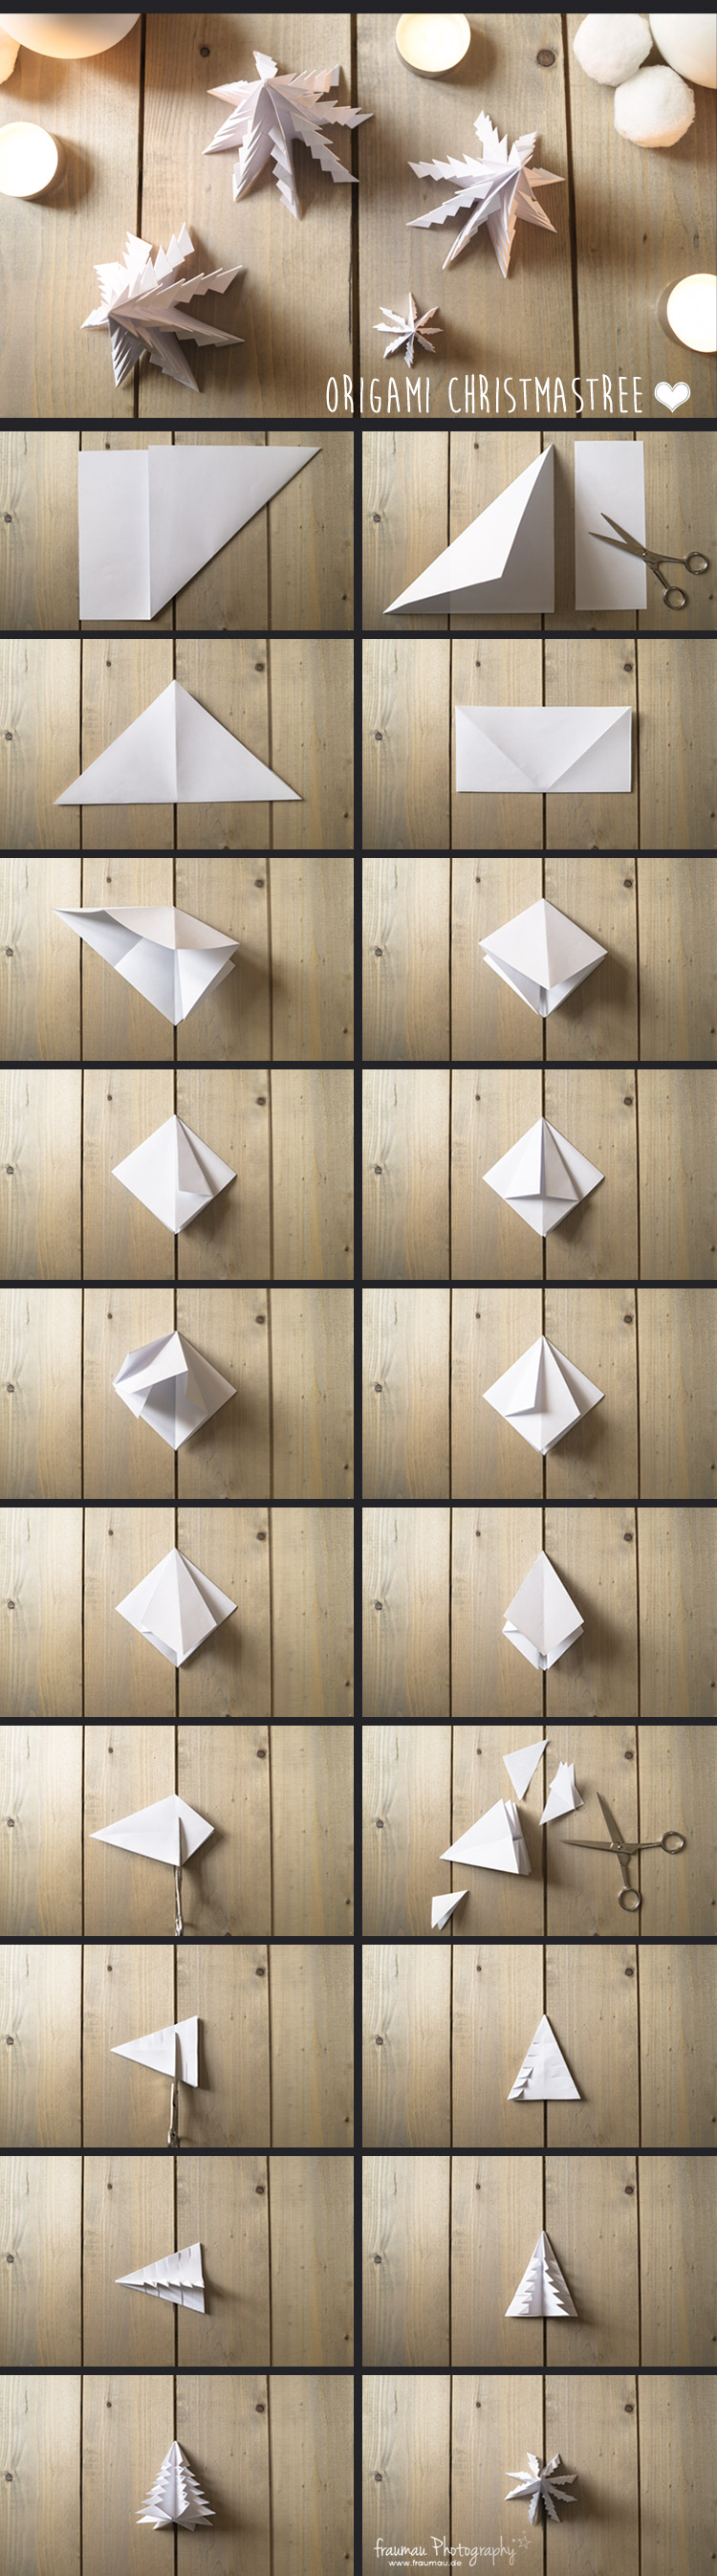 Origami_Weihnachtsbaum_DIY_fraumau_6